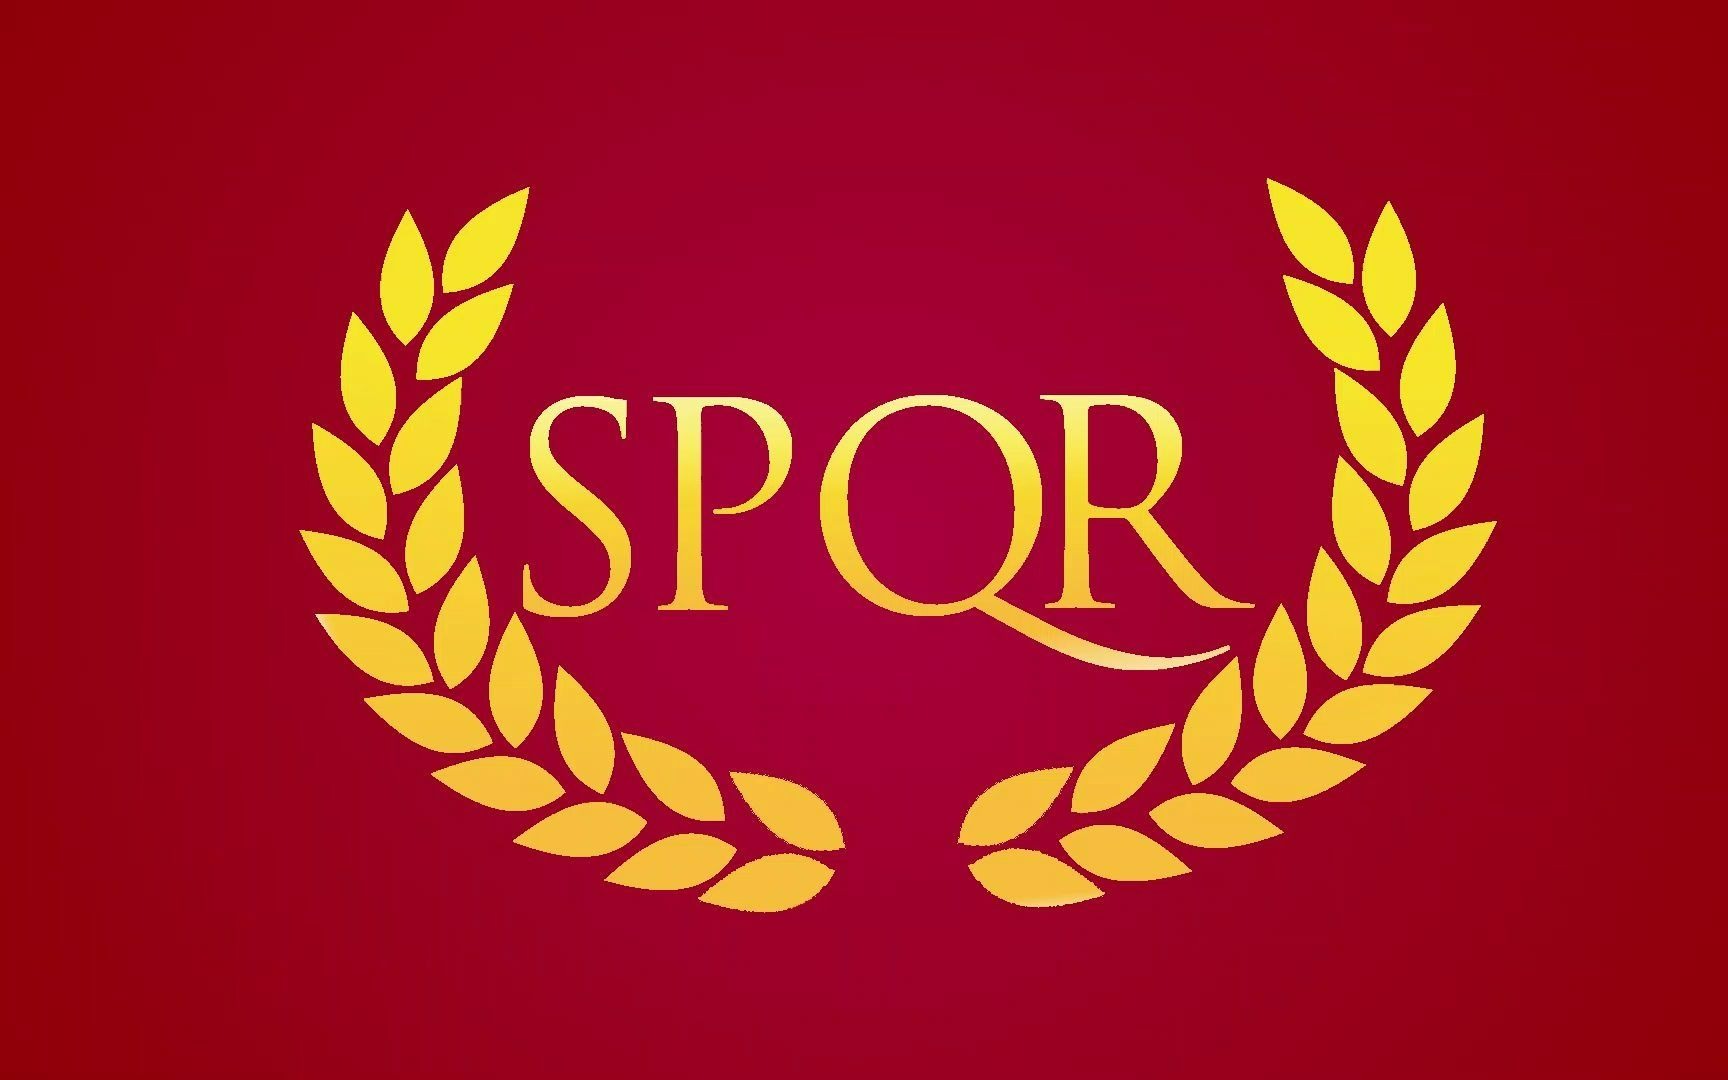 罗马帝国国旗 古罗马图片